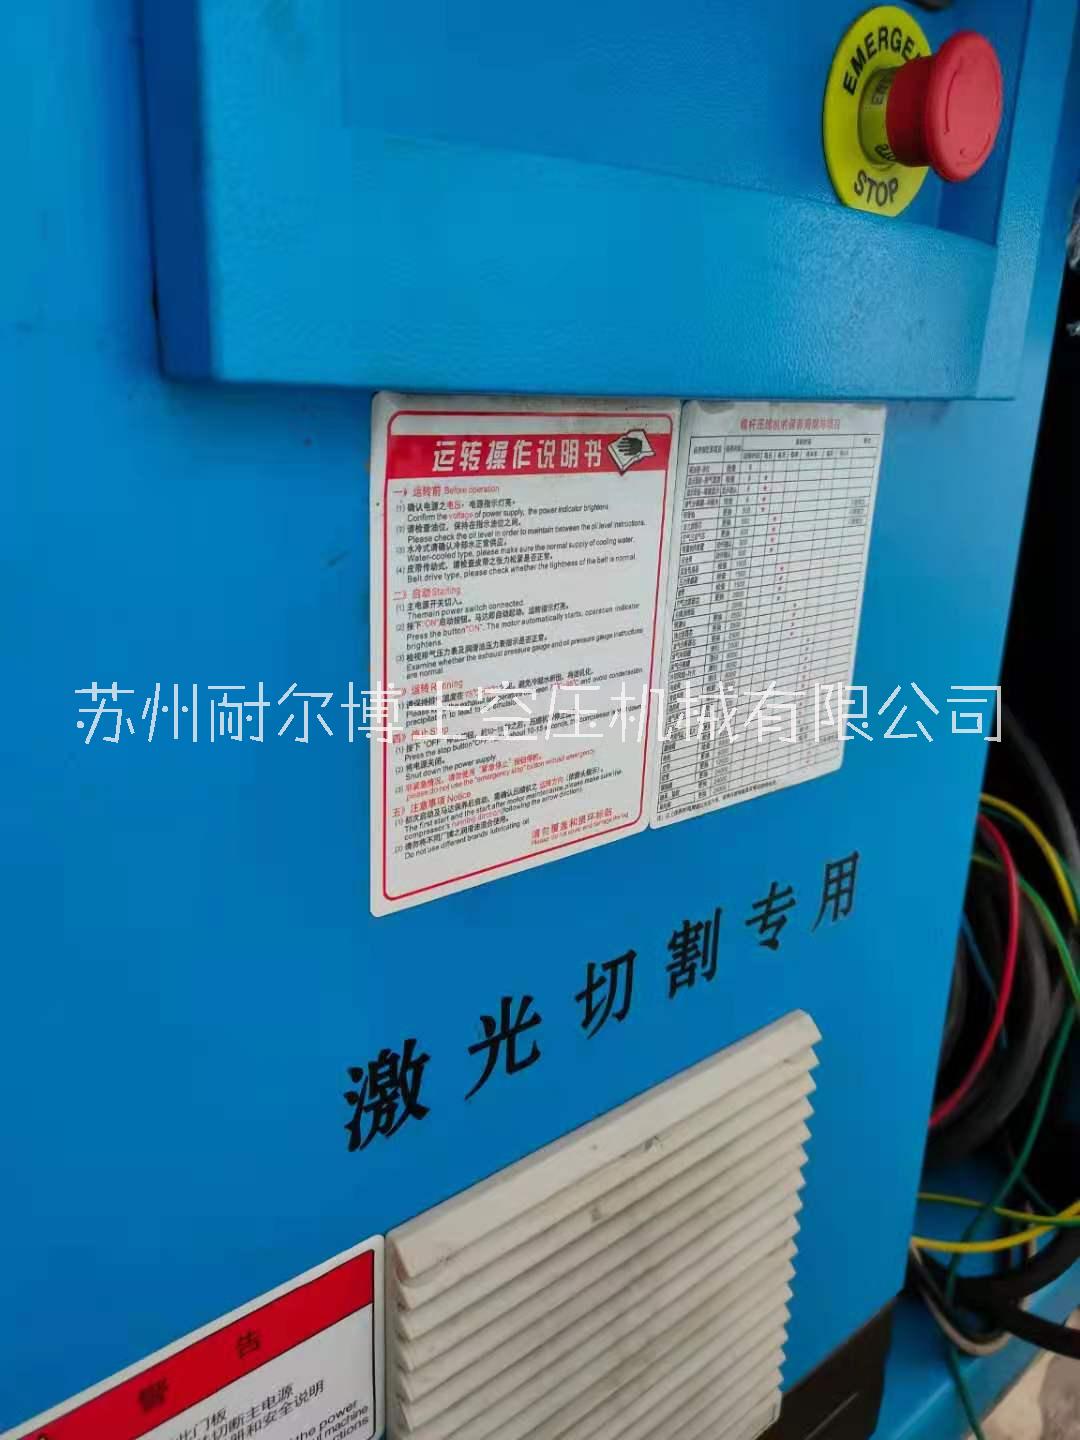 螺杆式空气压缩机厂家销售 苏州螺杆式空气压缩机图片